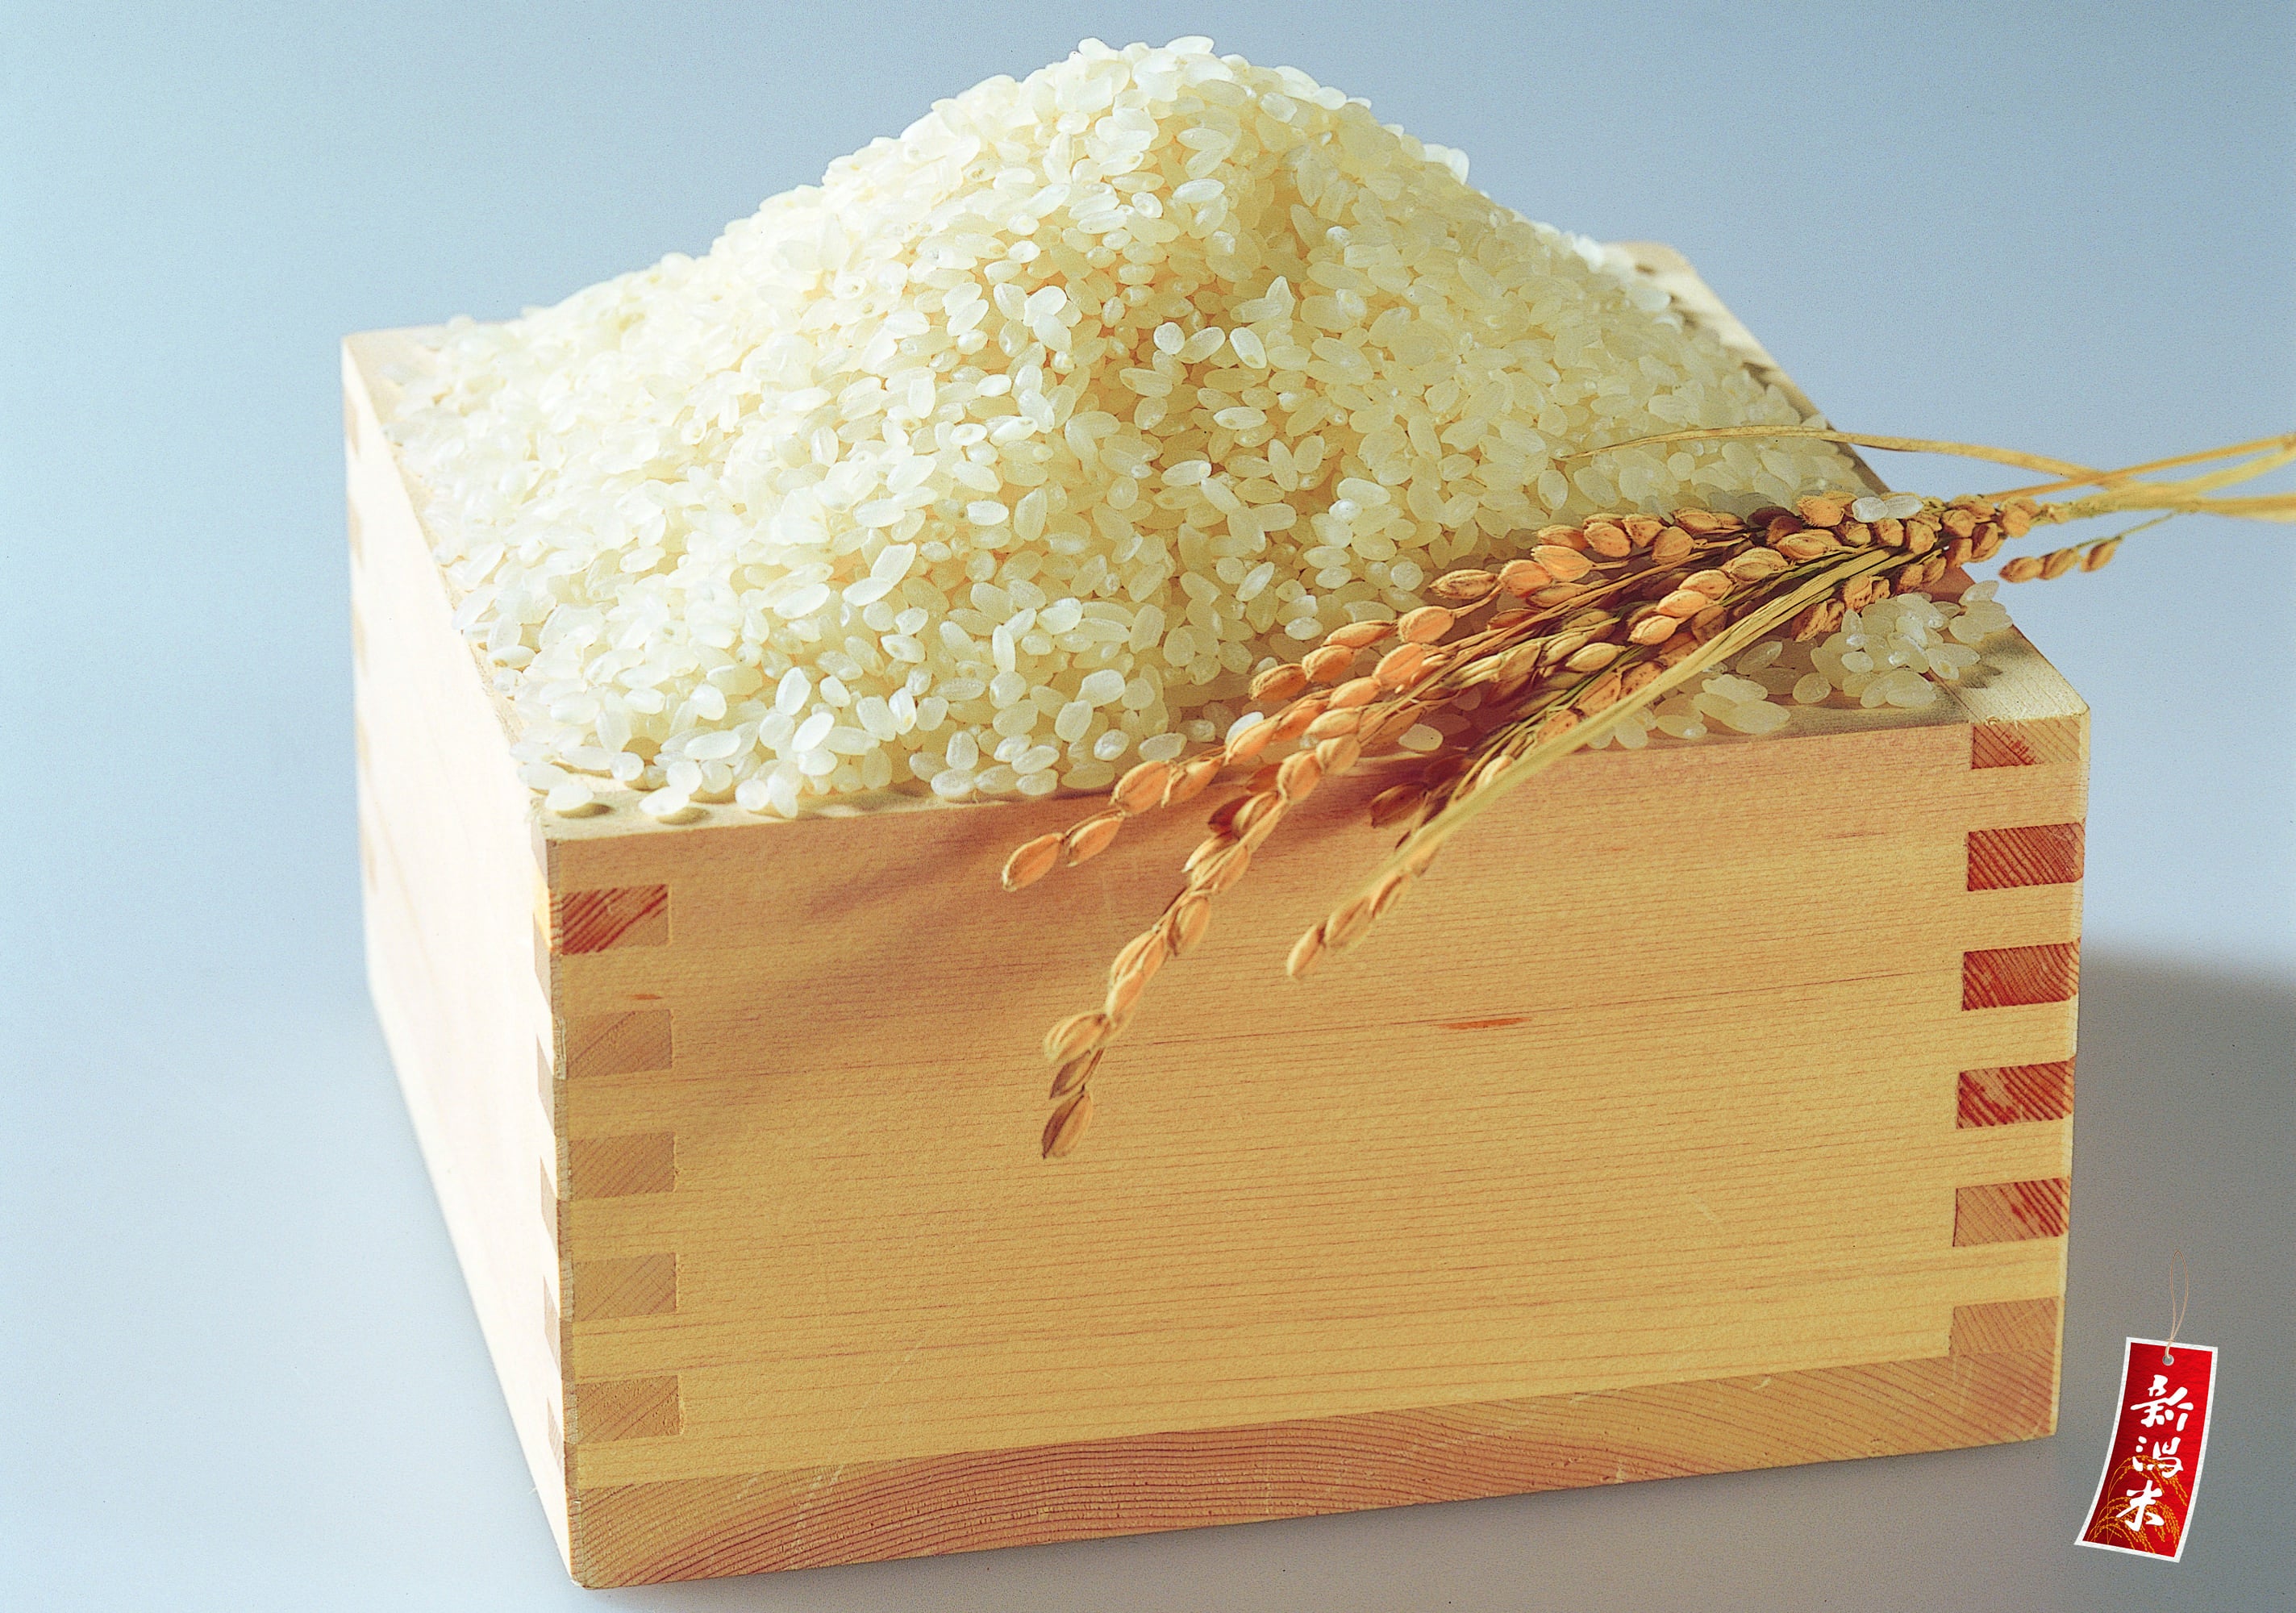 信濃川水系の刈谷田川の清らかな水で育ったお米をたくさんご用意しております。